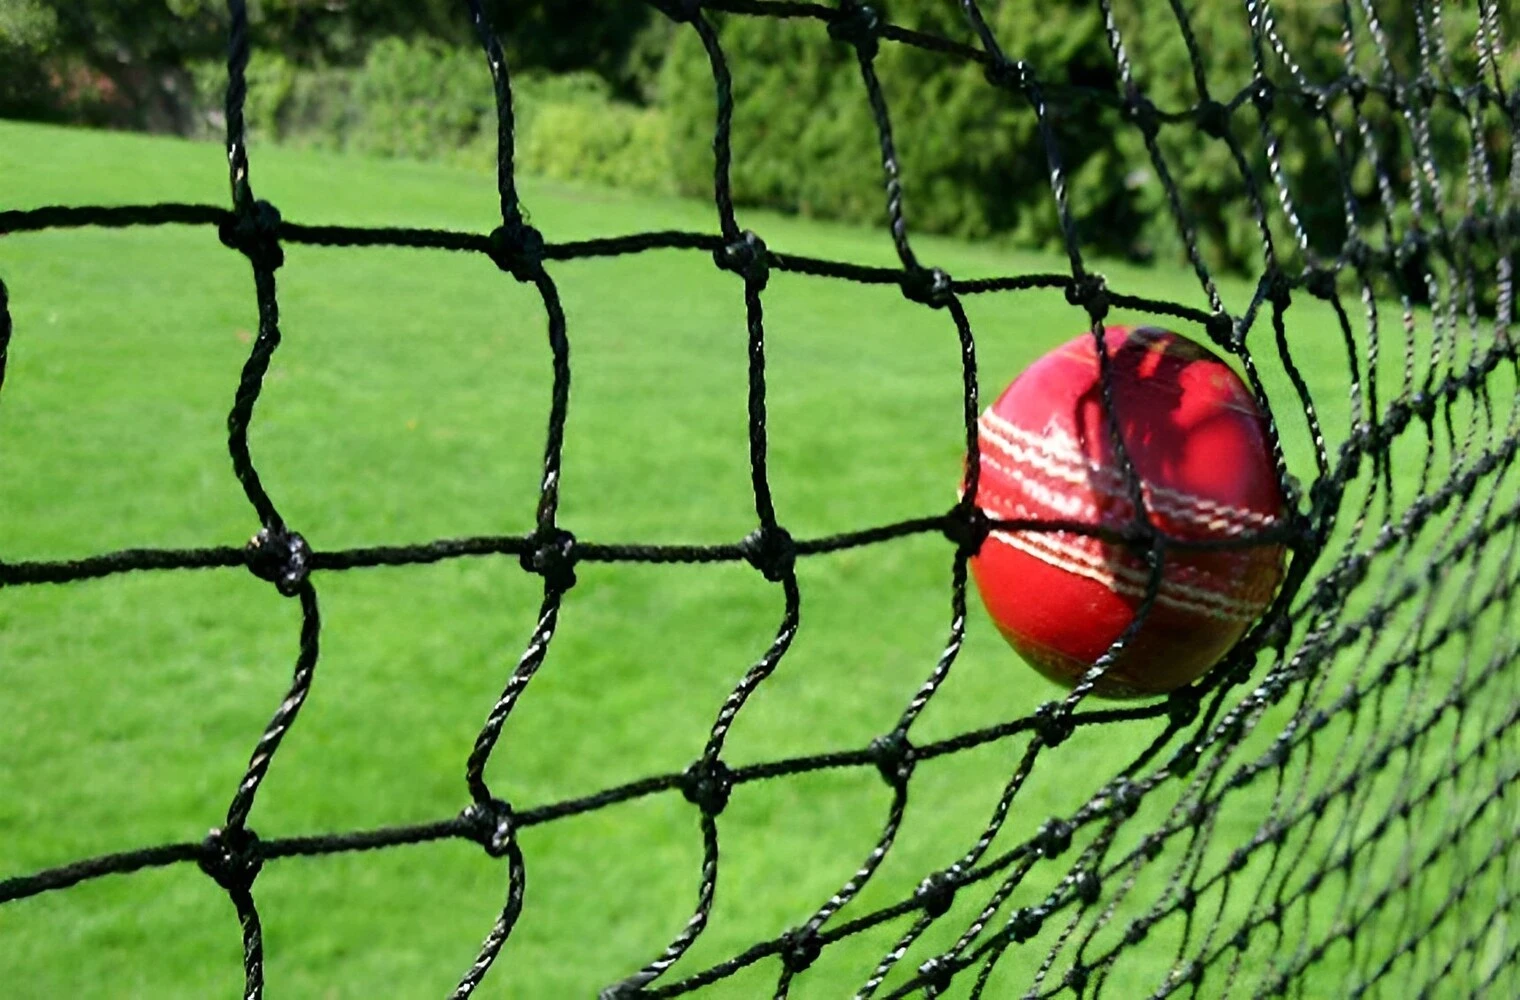 Cricket Net For Practice